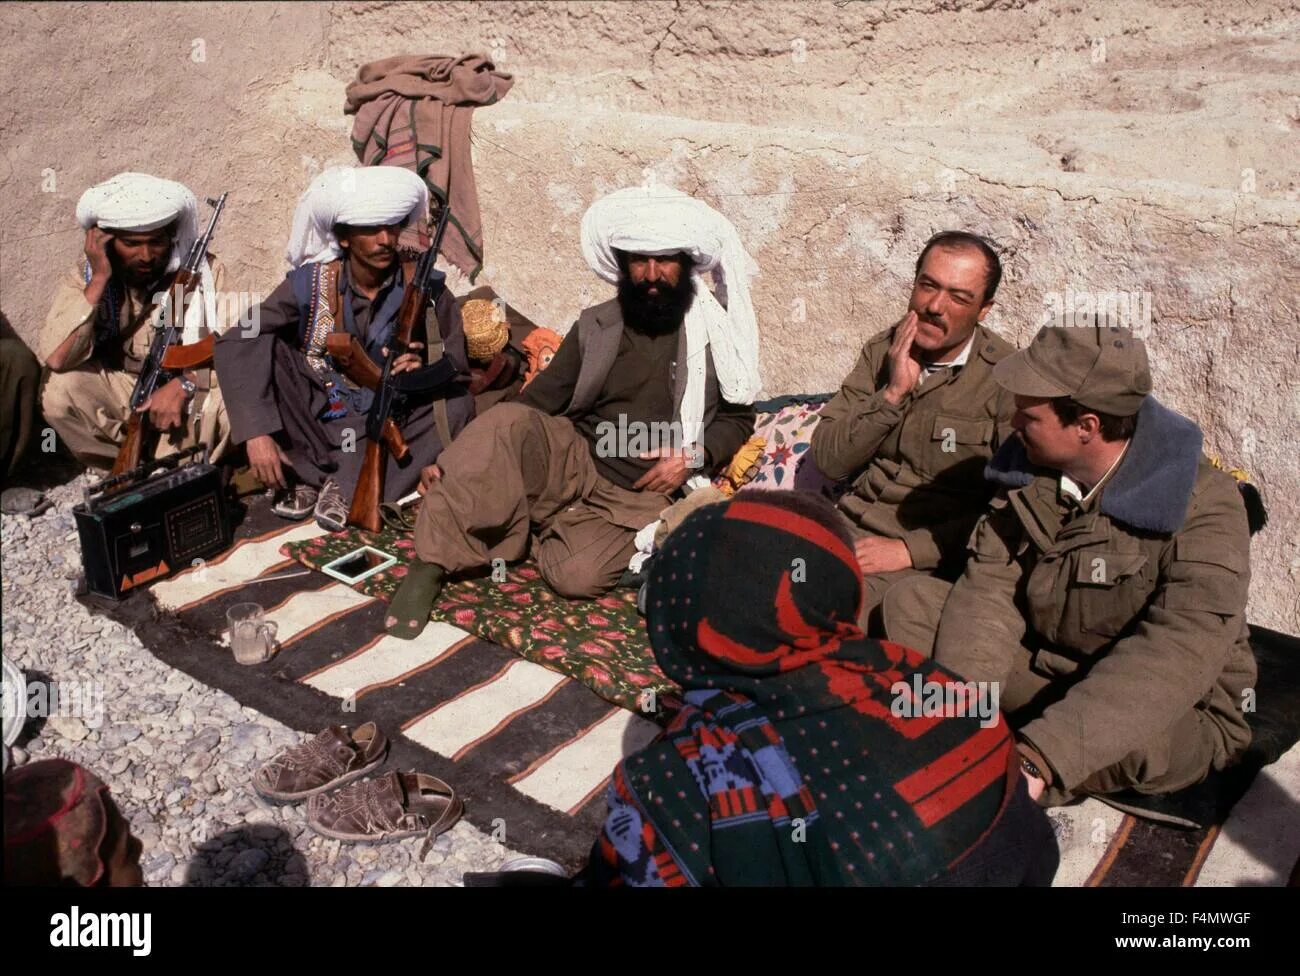 Моджахеды в Афганистане 1979. Талибы Афганистан 1979. Афганские моджахеды 1989. Белуджи в Афганистане. Как афганцы называли советских